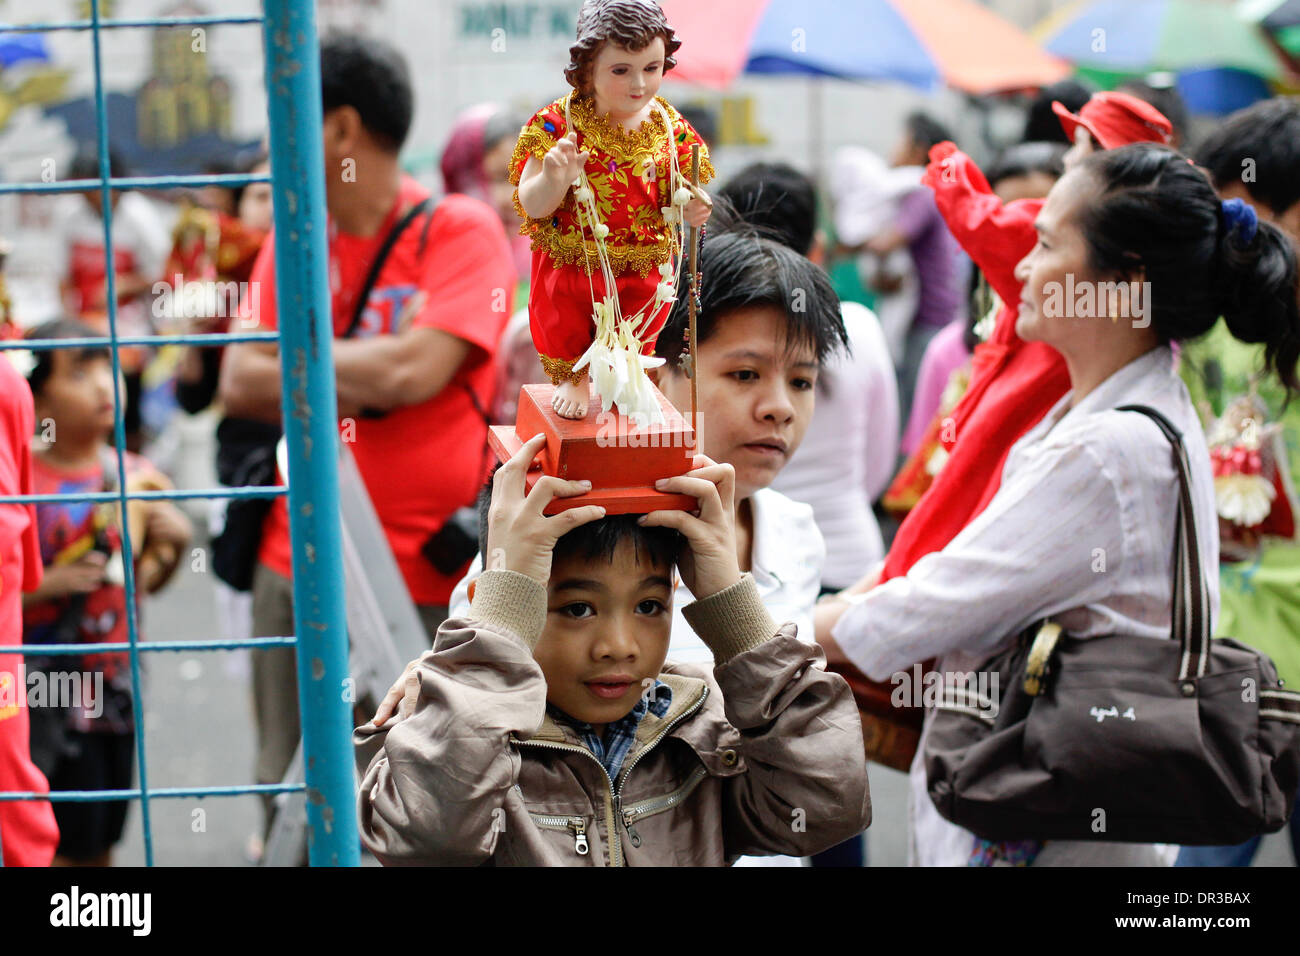 Manille, Philippines. 19Th Jul 2014. Les fervents catholiques célèbrent la fête de Santo Nino, à Manille, Philippines, Crédit : Mark Fredesjed Cristino/Alamy Live News Banque D'Images